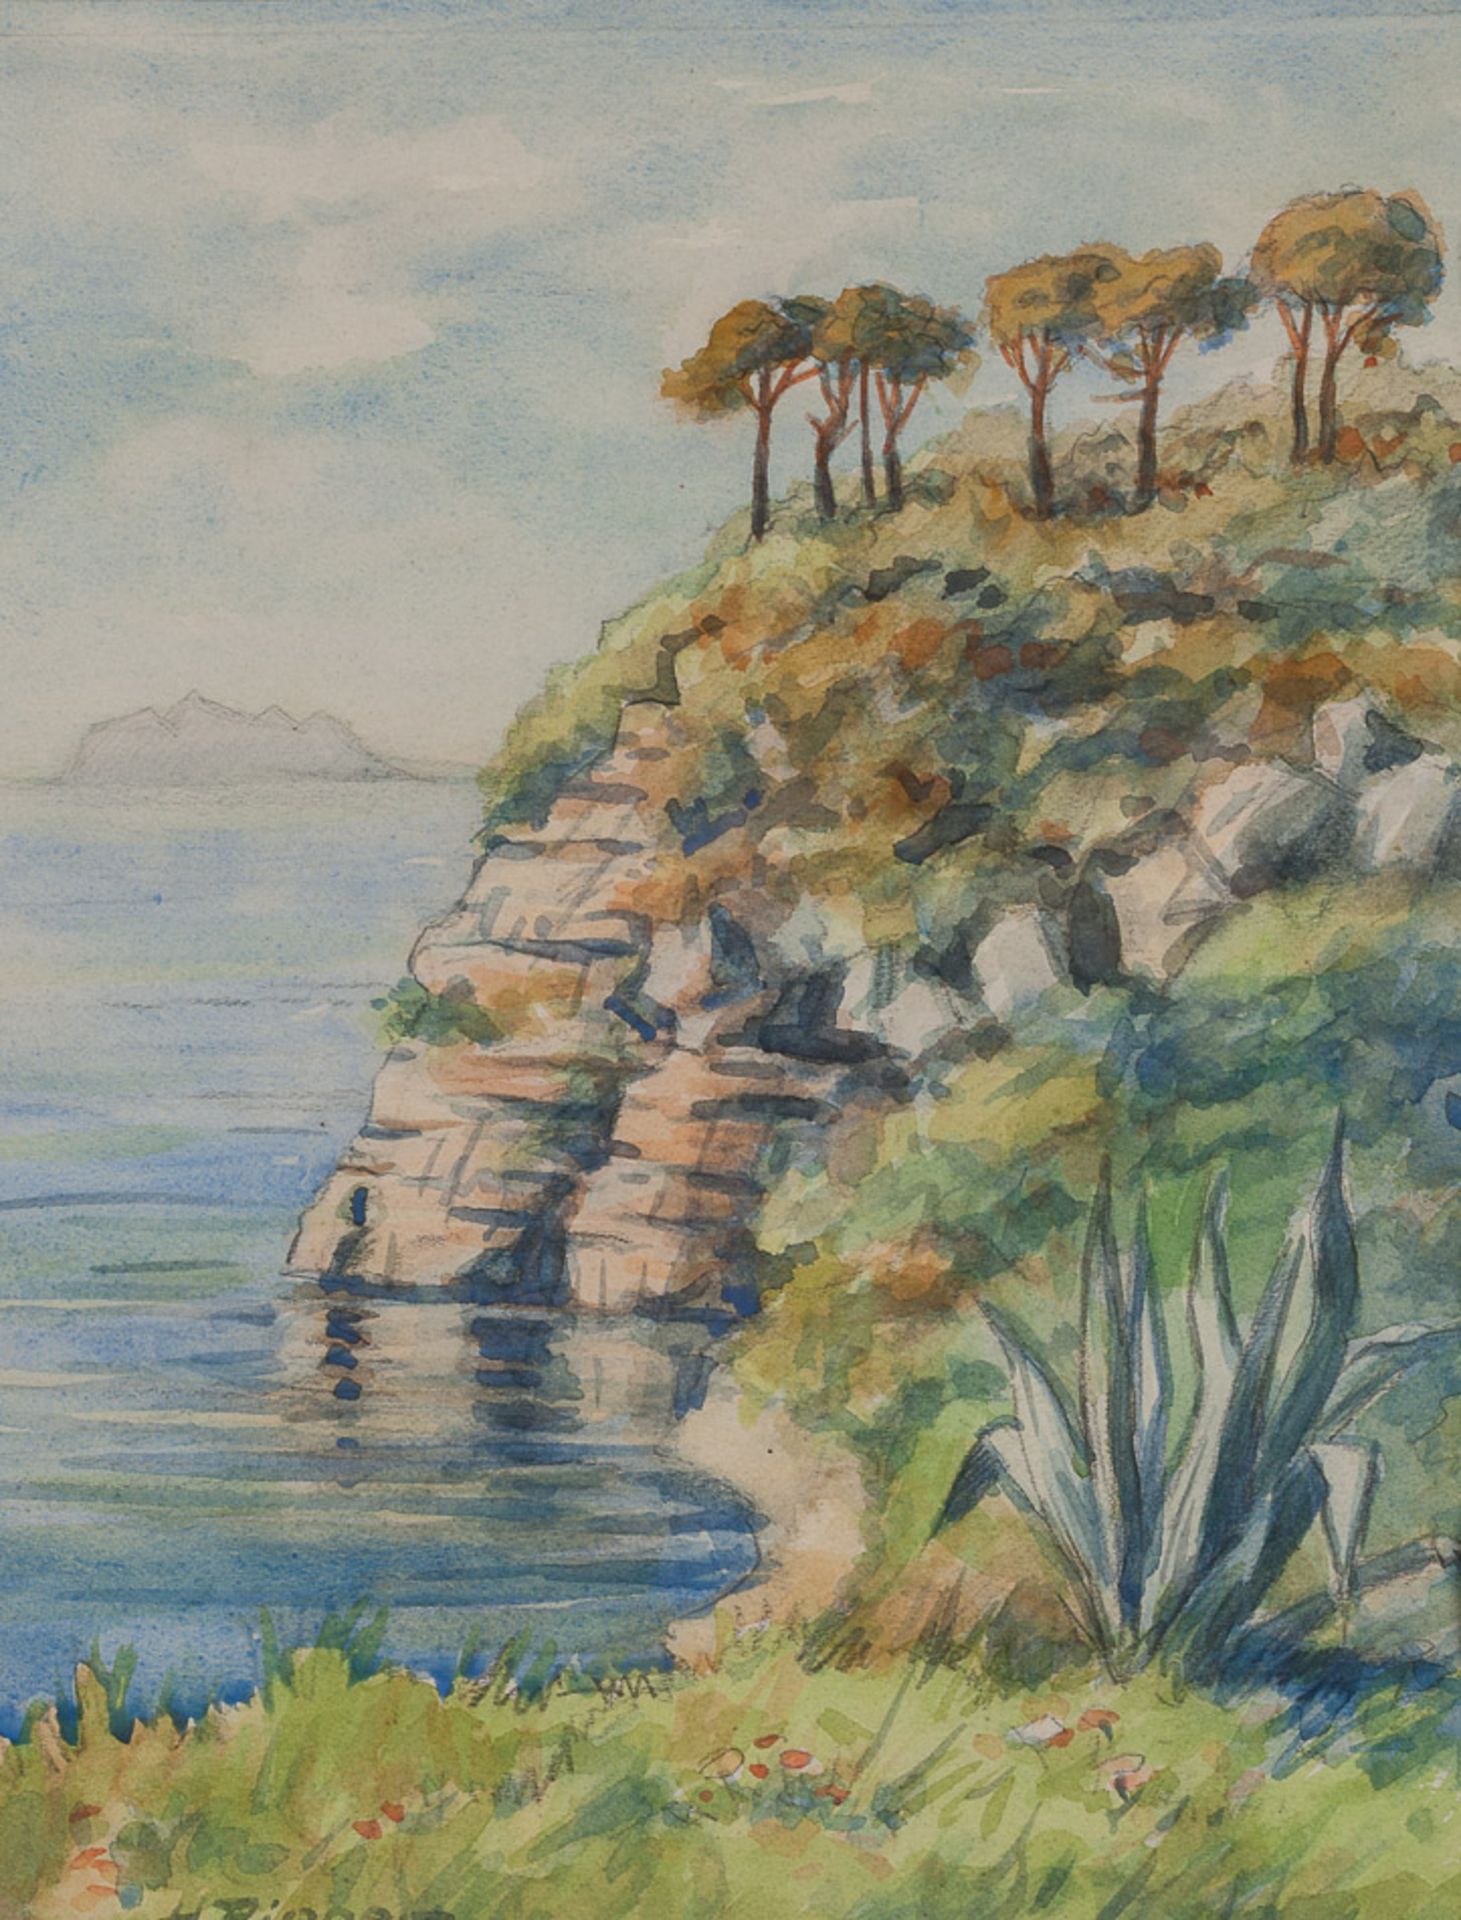 H.Pieper 20. Jhd."Steilküste"
Zeichnung-Aquarell, Sichtmaß 30,5 cm x 23,5 cm,
links unten signiert